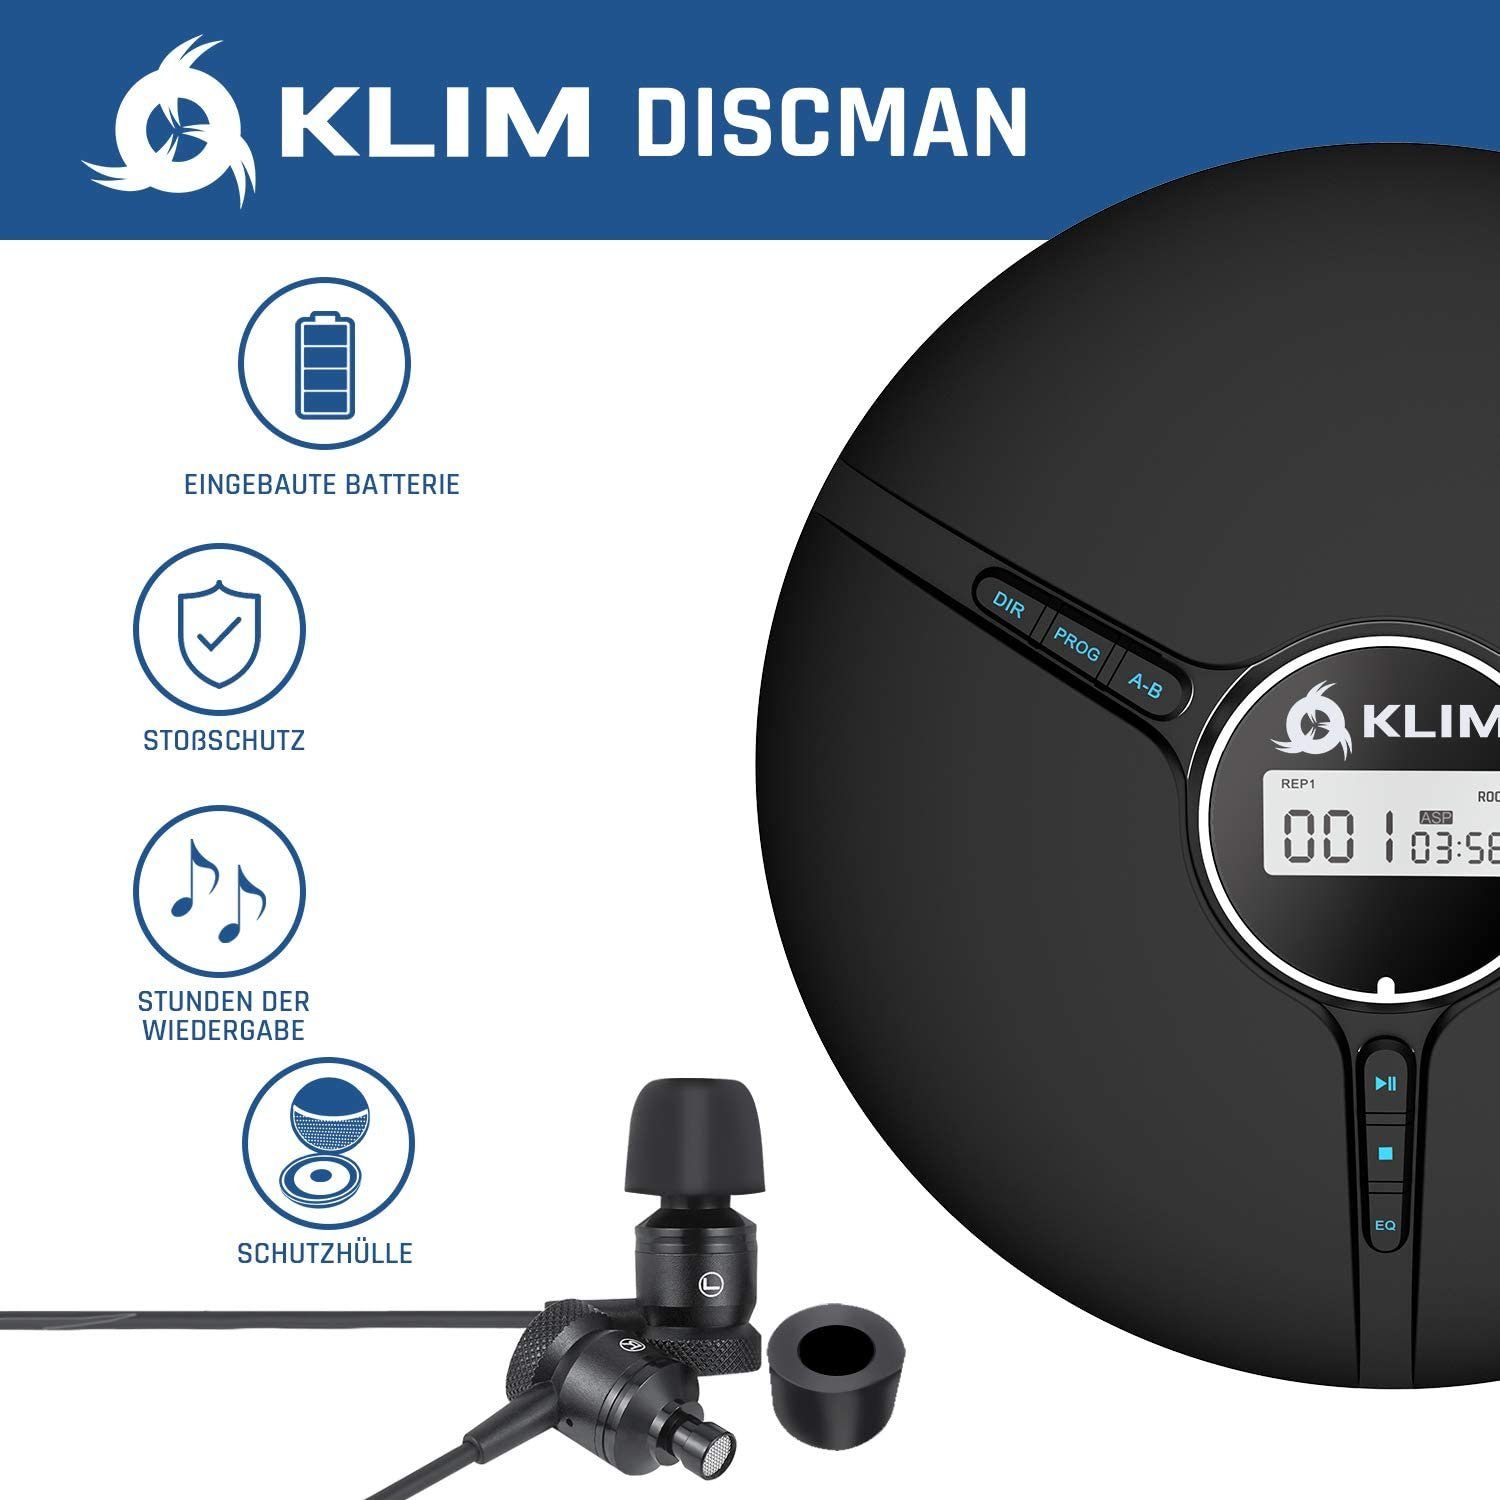 KLIM Tragbarer Player Kopfhörer CD-Spieler unverwechselbares Hörerlebnis) (hochwertiger Stereo-CD Discman, inklusive für Scharz